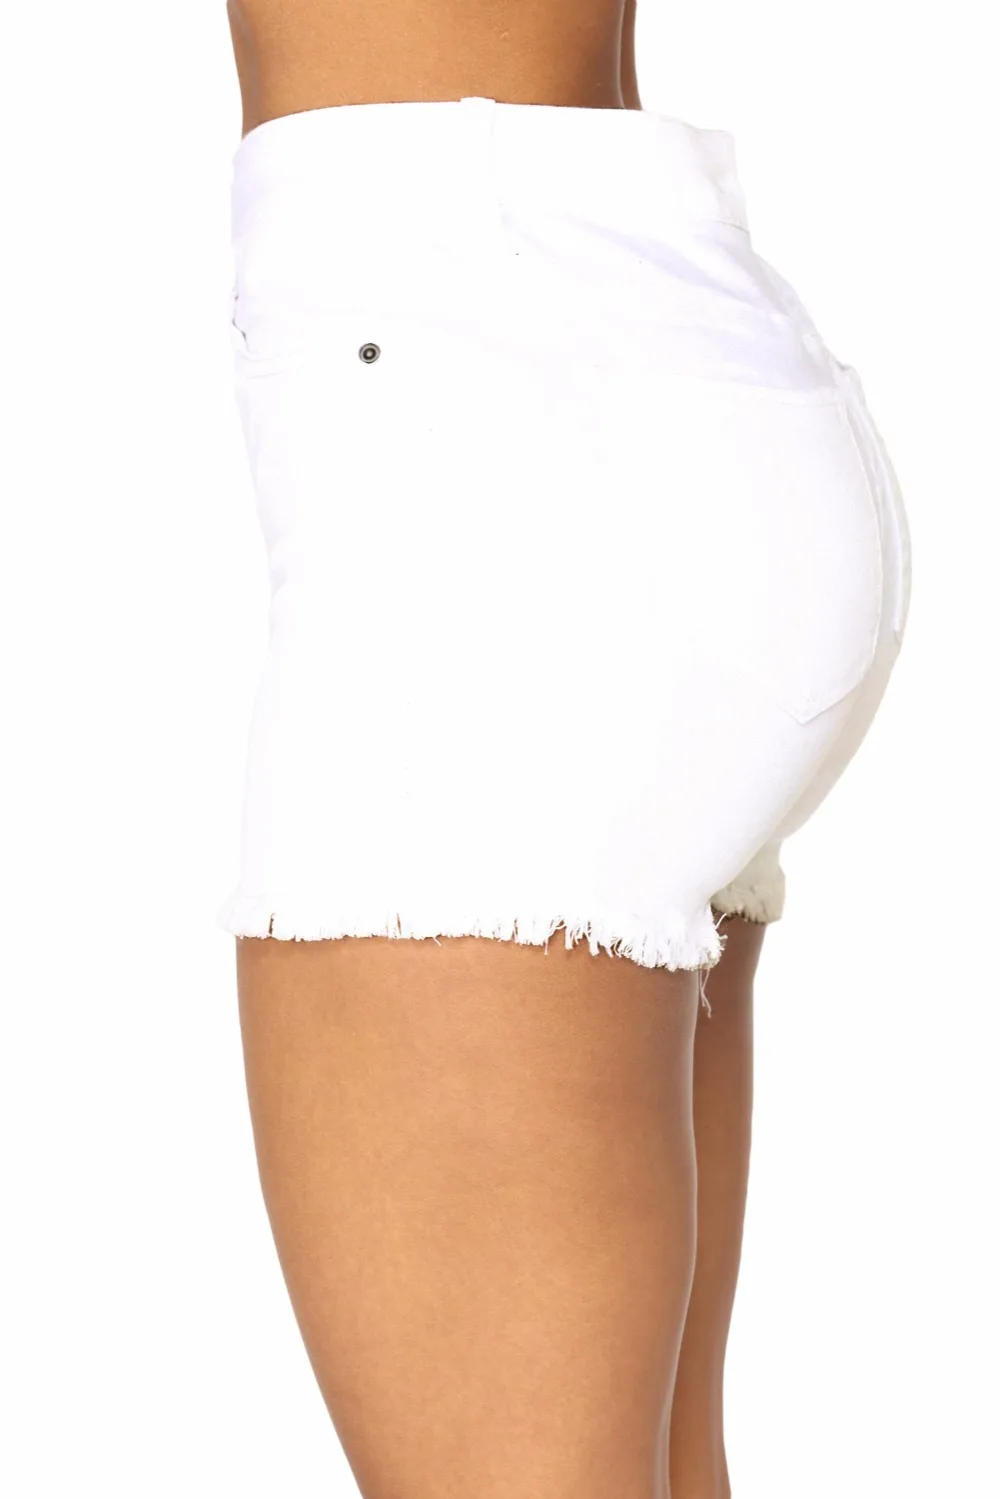 Горячая отверстие 2019 новый летний облегающую посадку Высокая Талия Джинсовые шорты Для женщин Мода Короткие джинсы Sexy кисточкой черный